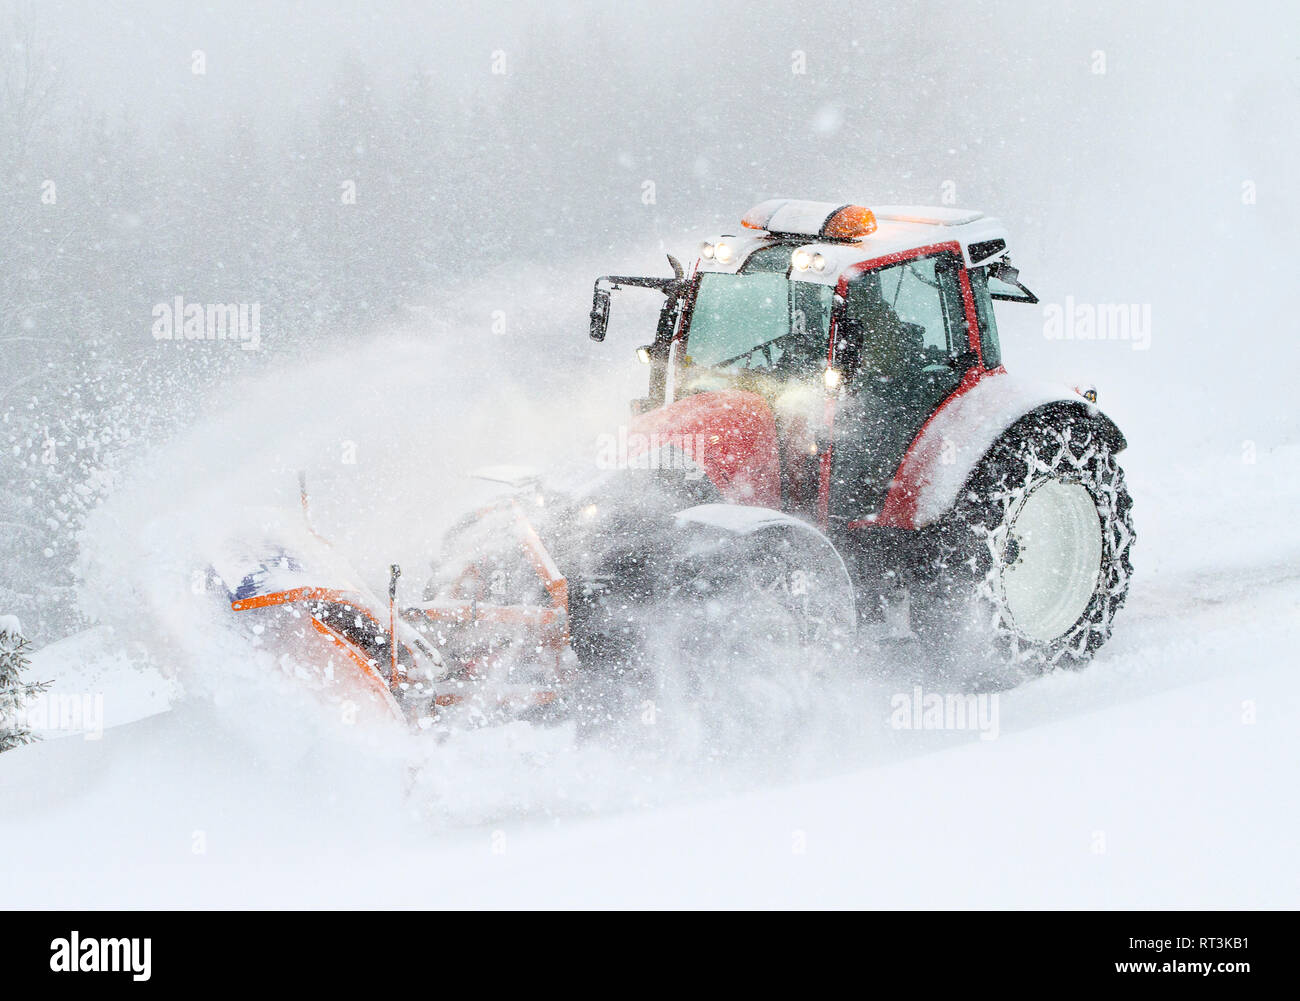 Austria, Tirolo, Obergurgl, neve-servizio di aratura con spartineve Foto Stock